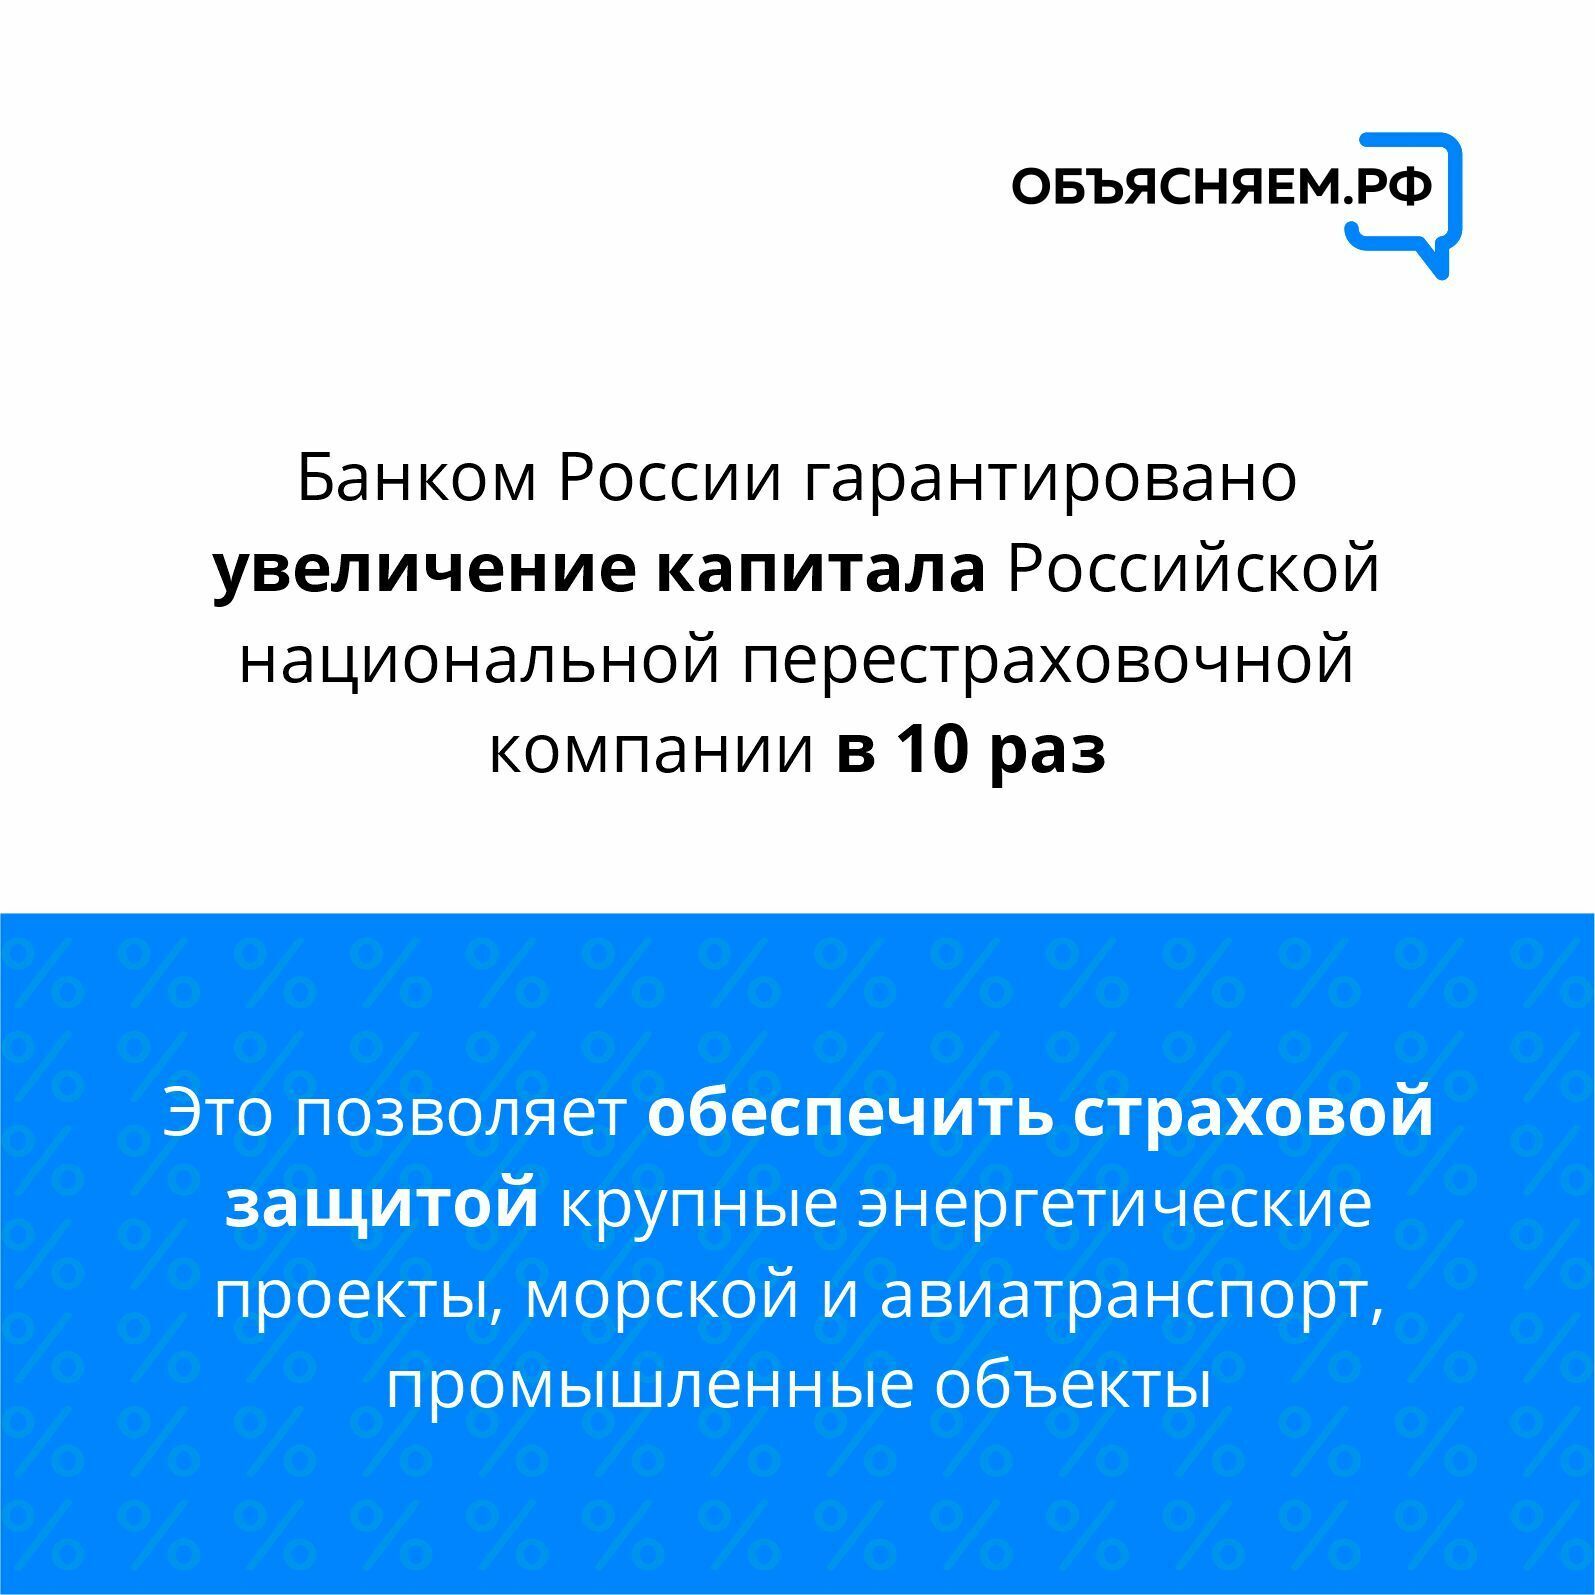 О ключевых мерах Банка России по поддержке граждан